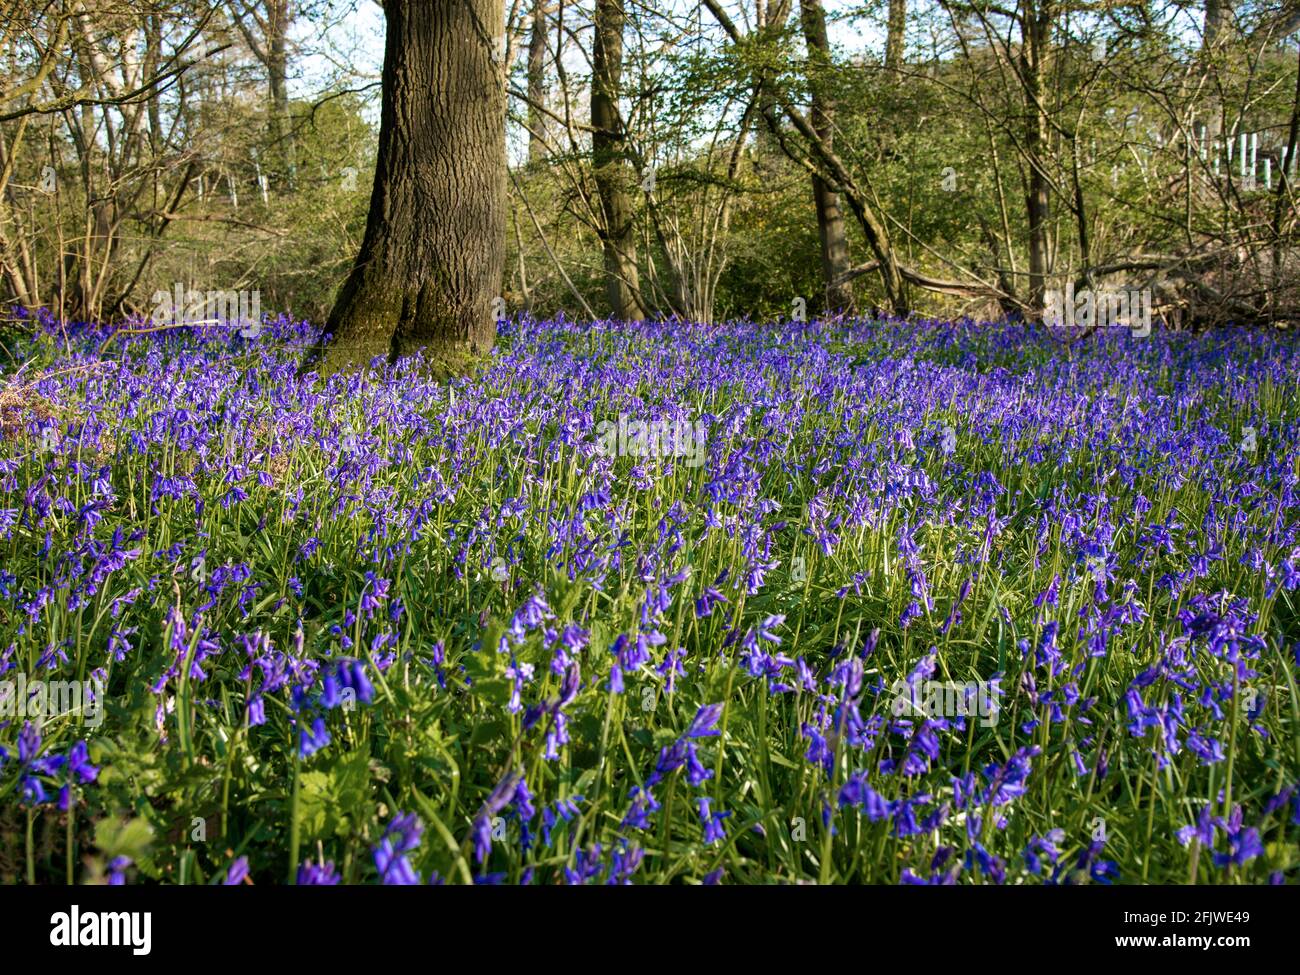 Einheimische englische Bluebells (Hyacinthoides non-scripta) blühen im Wald bei Binfield Heath, Oxfordshire, England, Großbritannien Stockfoto